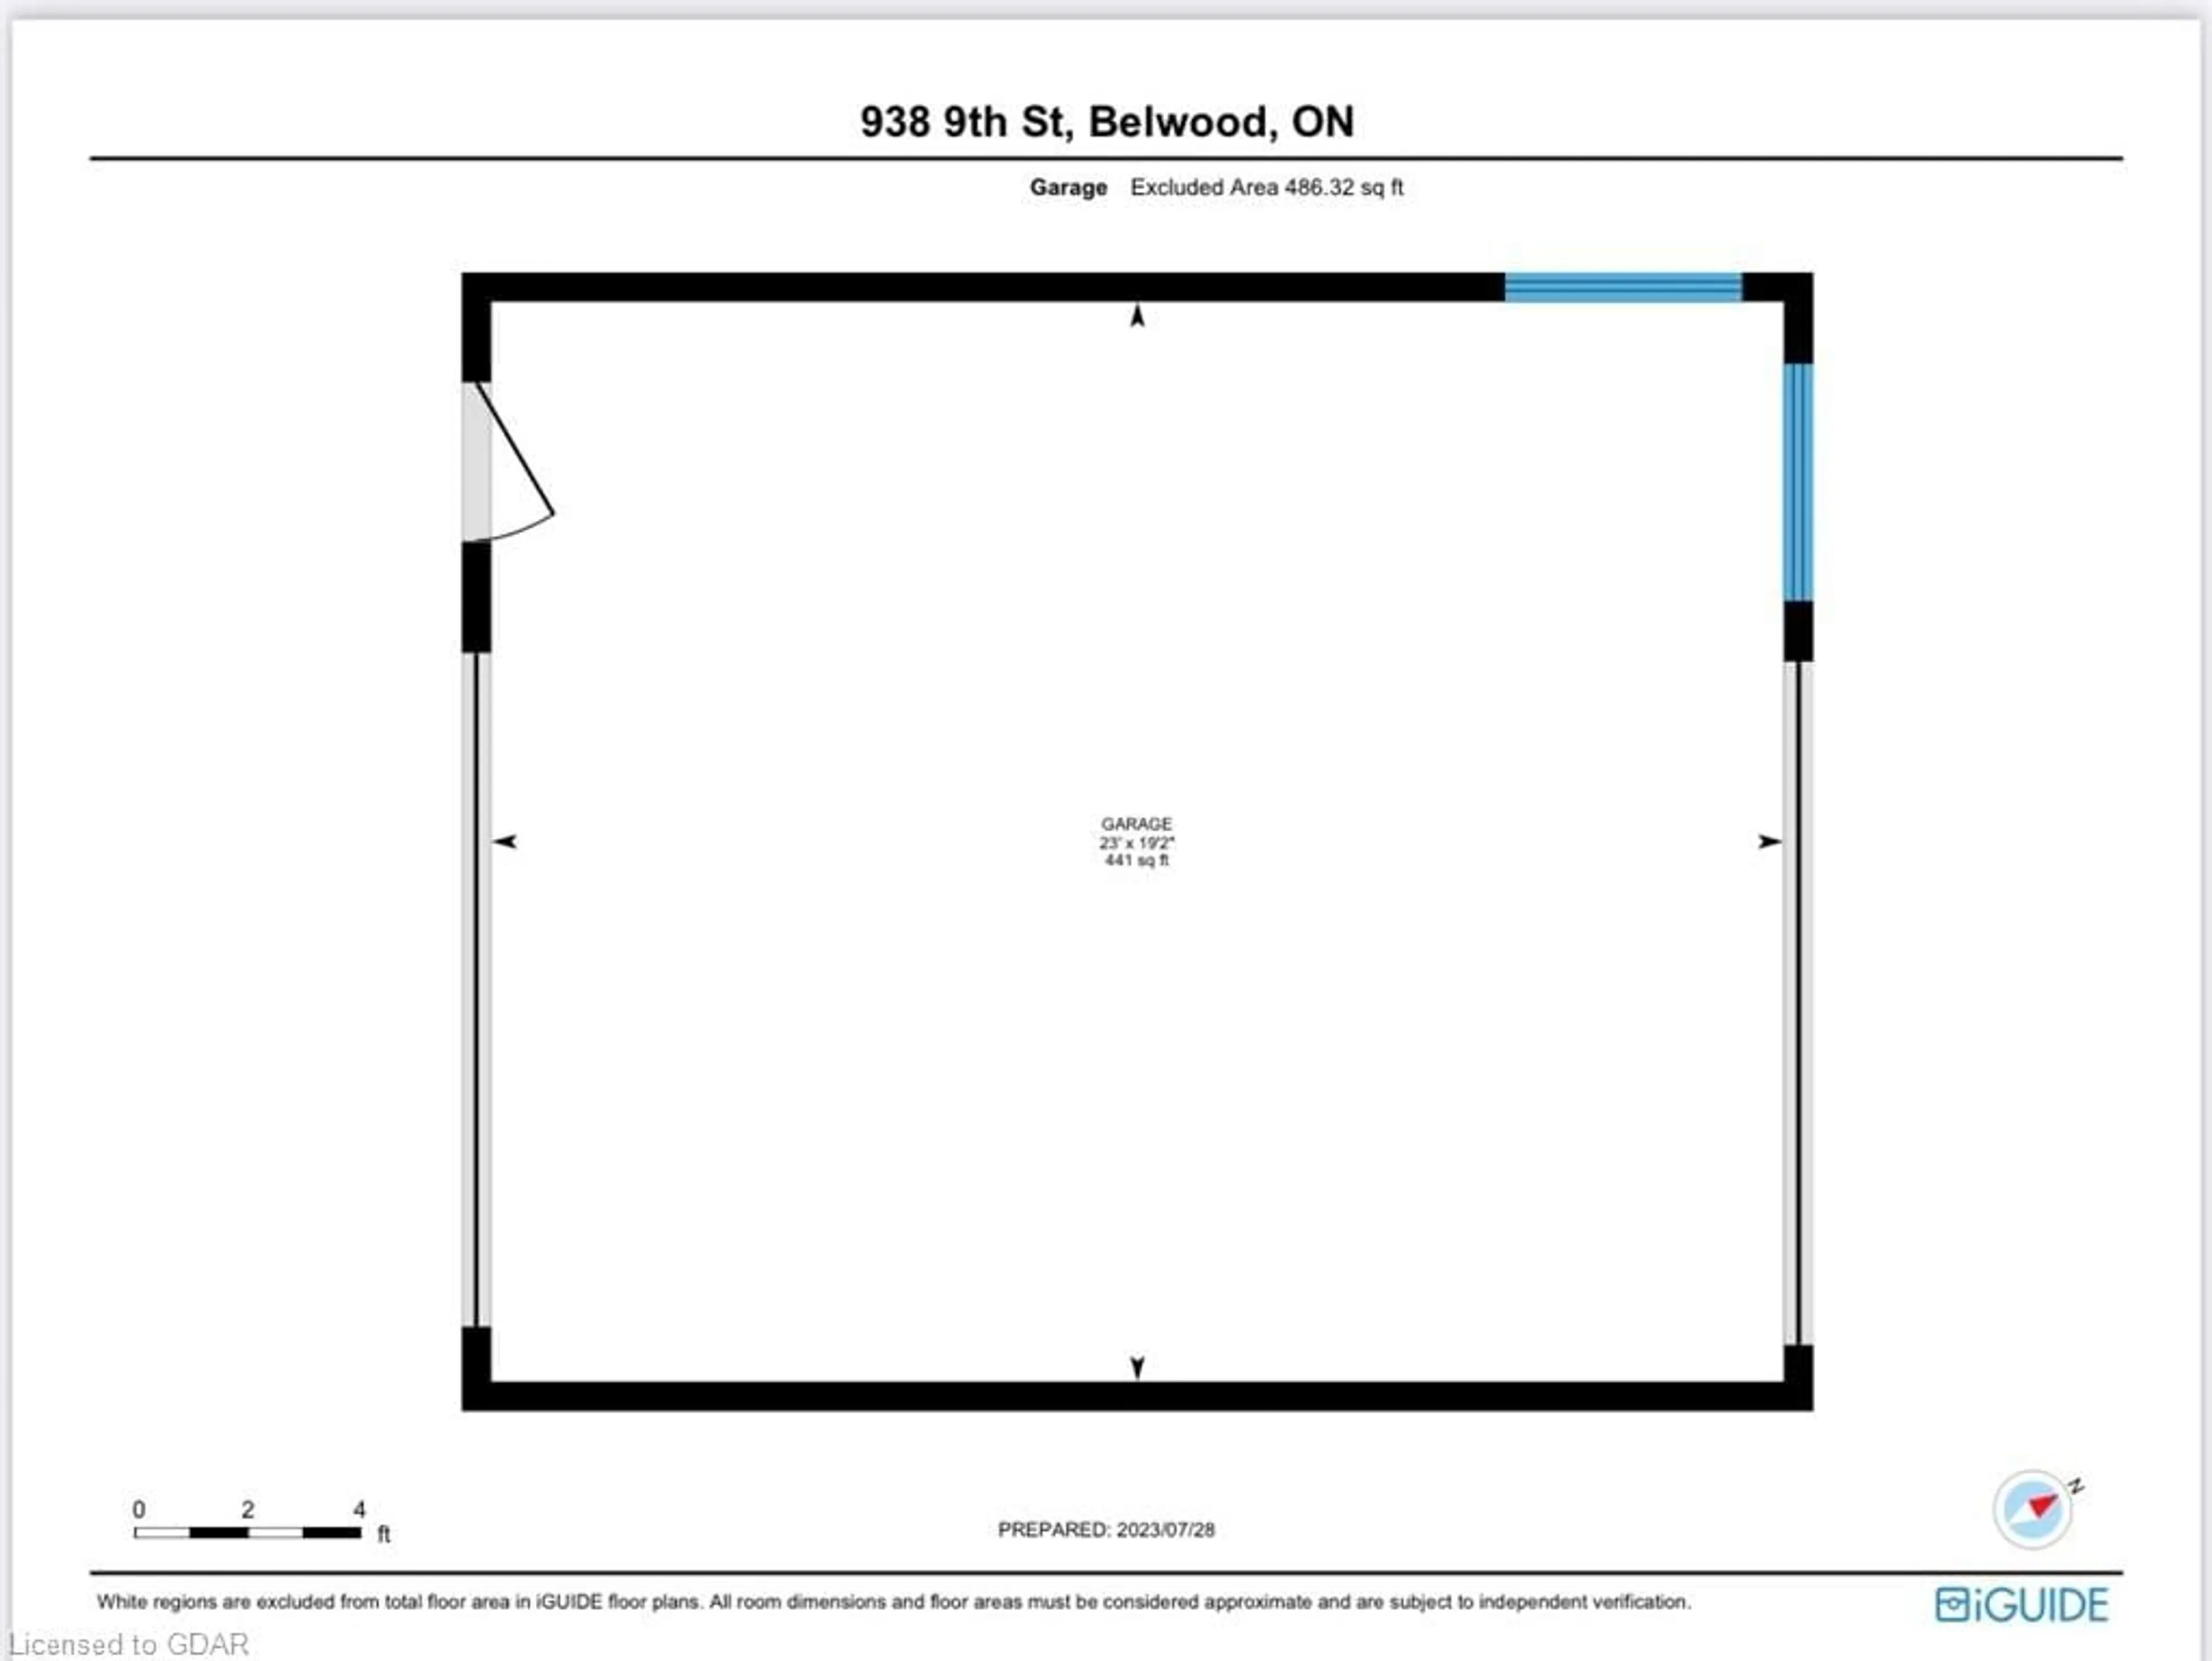 Floor plan for 938 Ninth St, Belwood Lake Ontario N0B 1J0